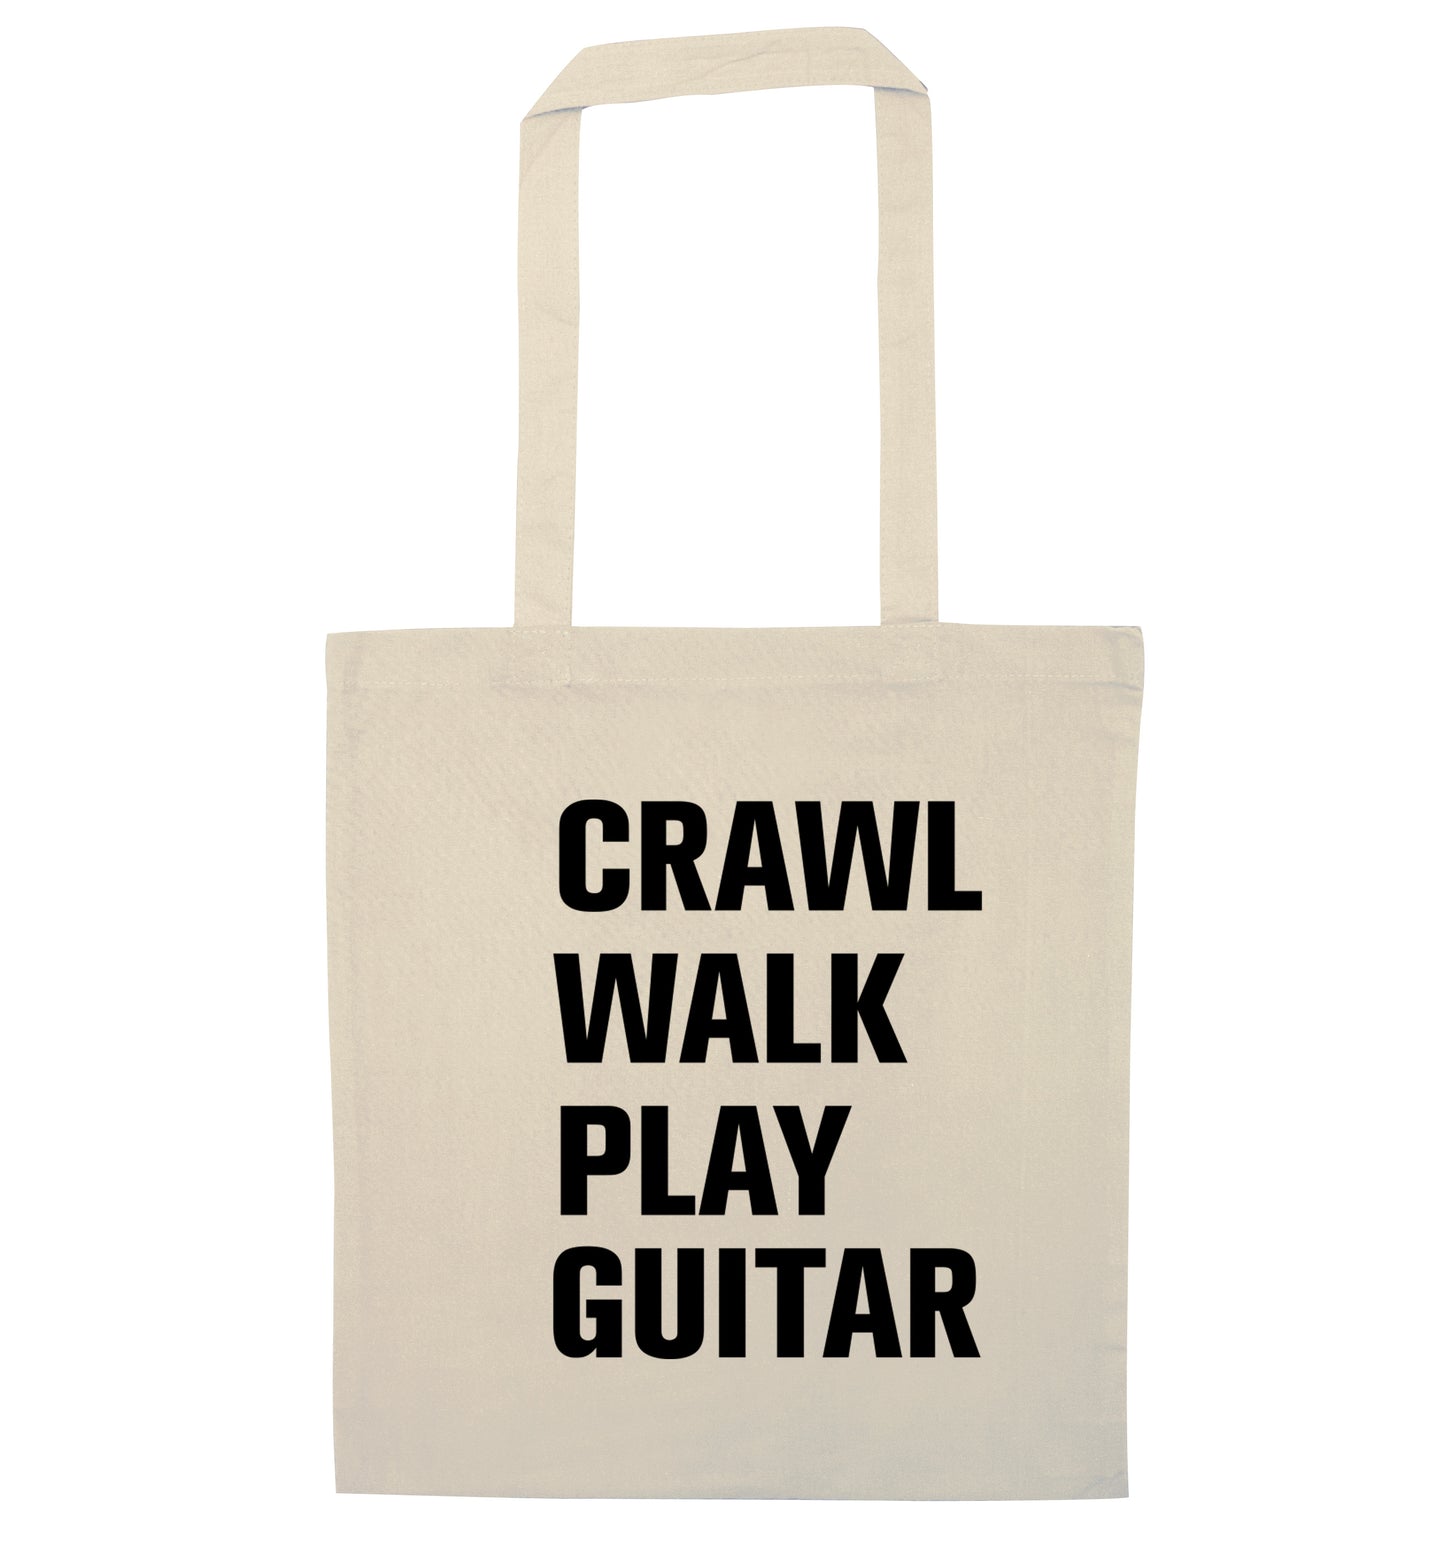 Crawl walk play guitar natural tote bag